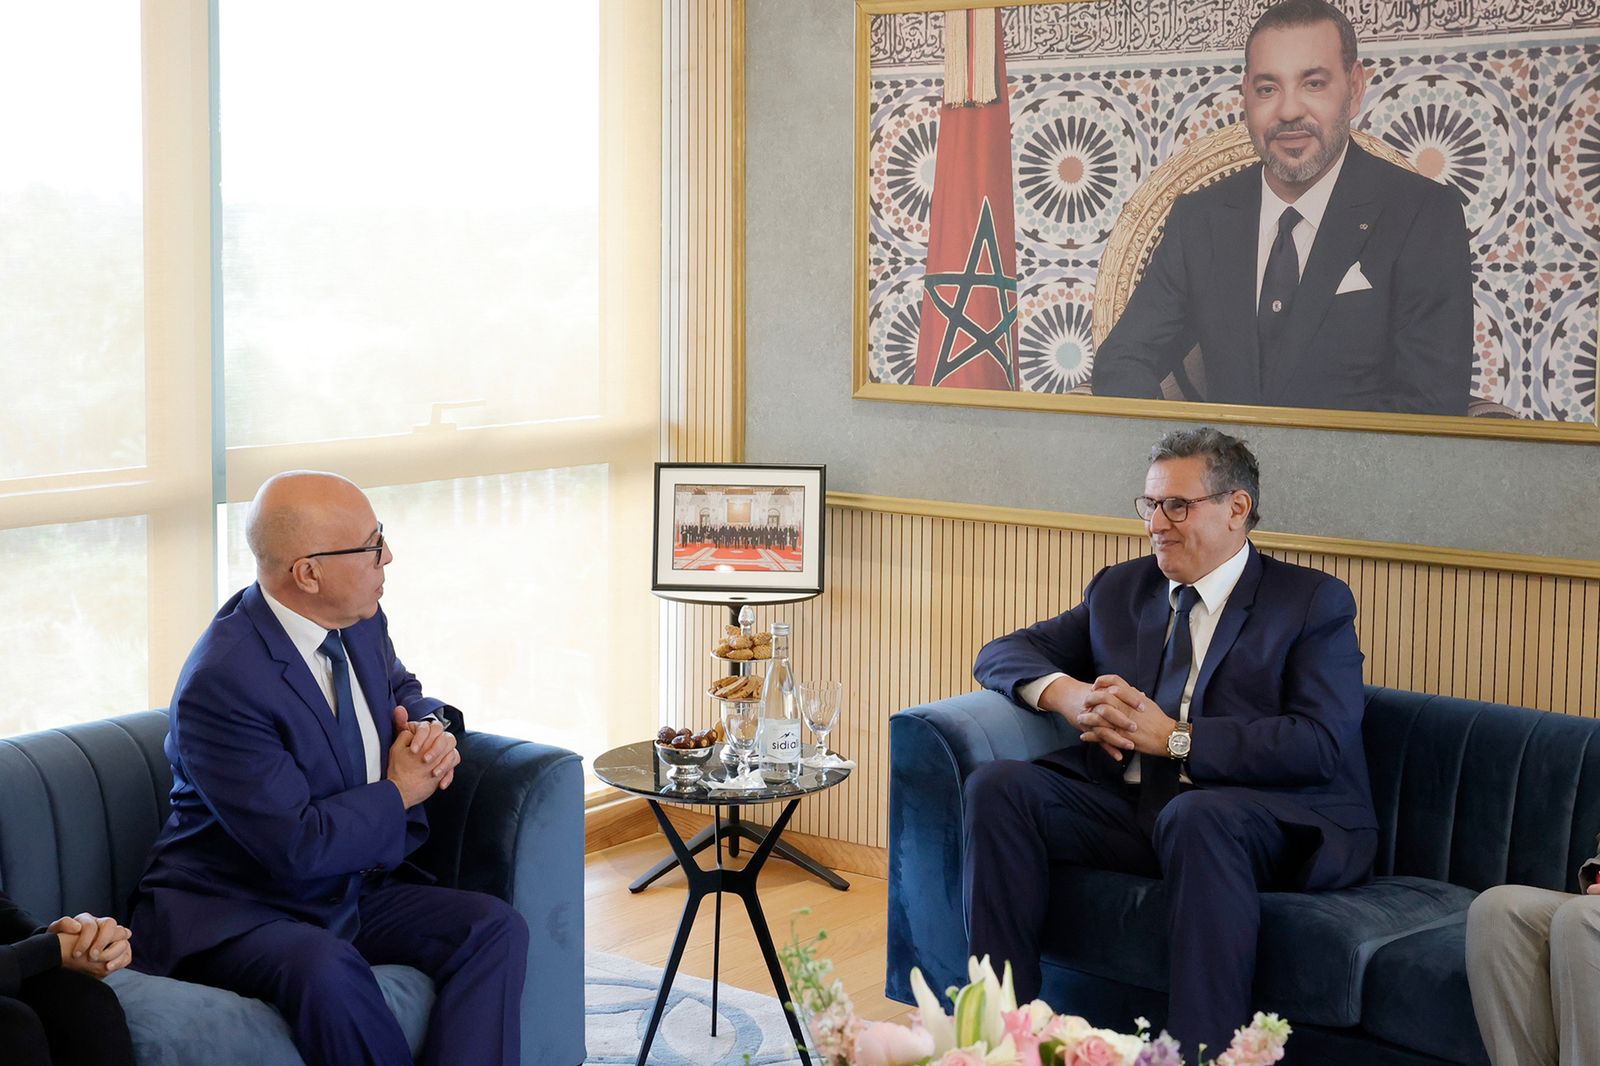 Lors de la rencontre entre Aziz Akhannouch, président du RNI, et Eric Ciotti, président de LR, jeudi 4 mai 2023 à Rabat.